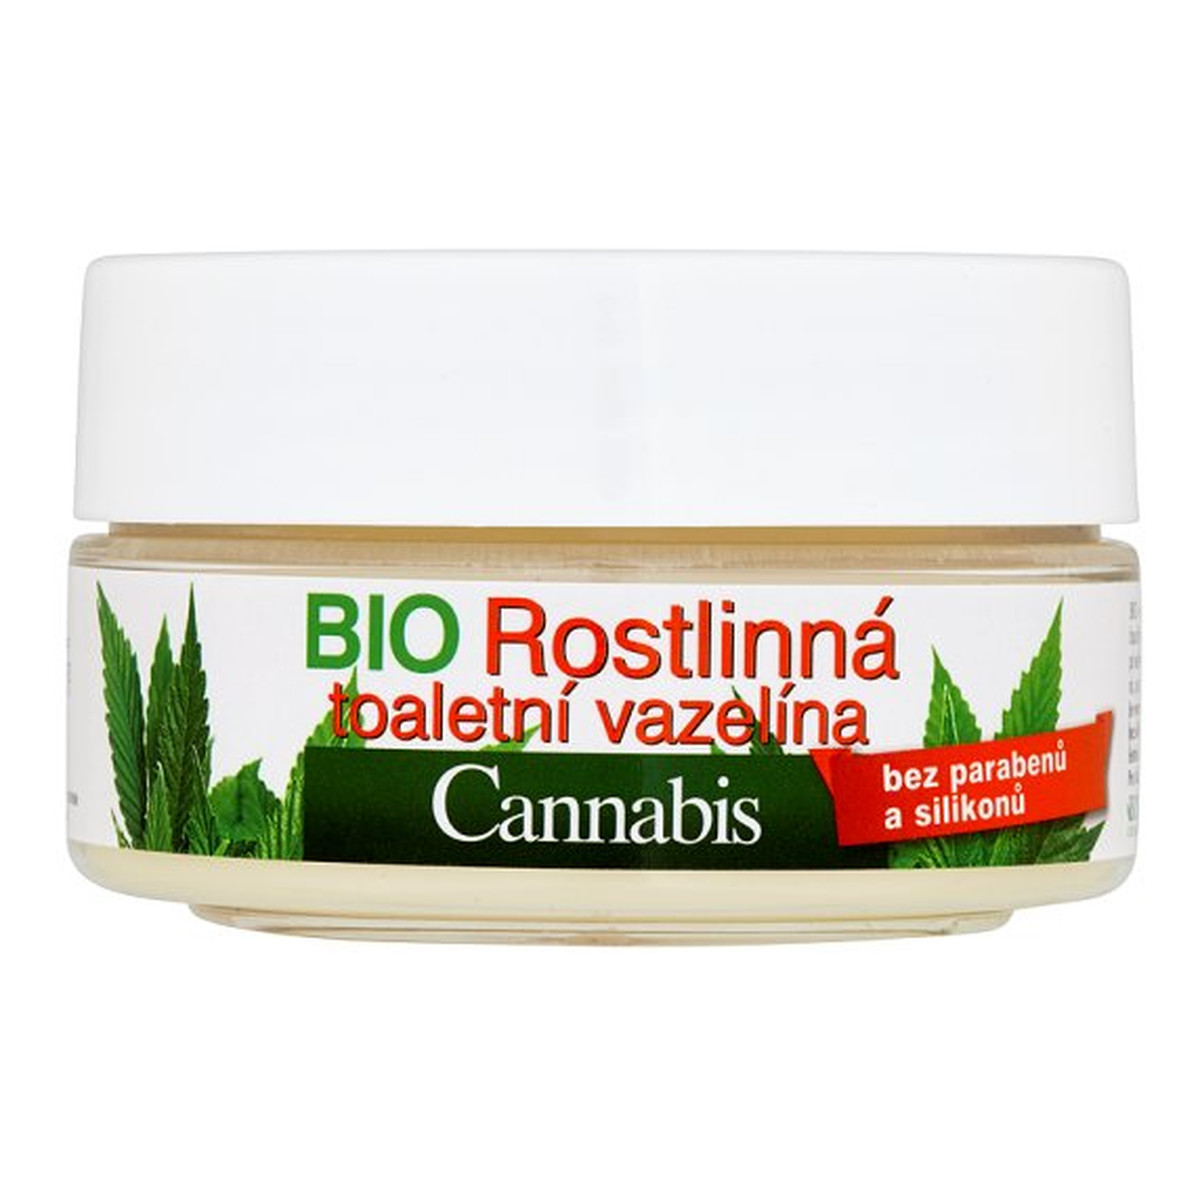 Bione Cannabis naturalna roślinna wazelina kosmetyczna 155ml